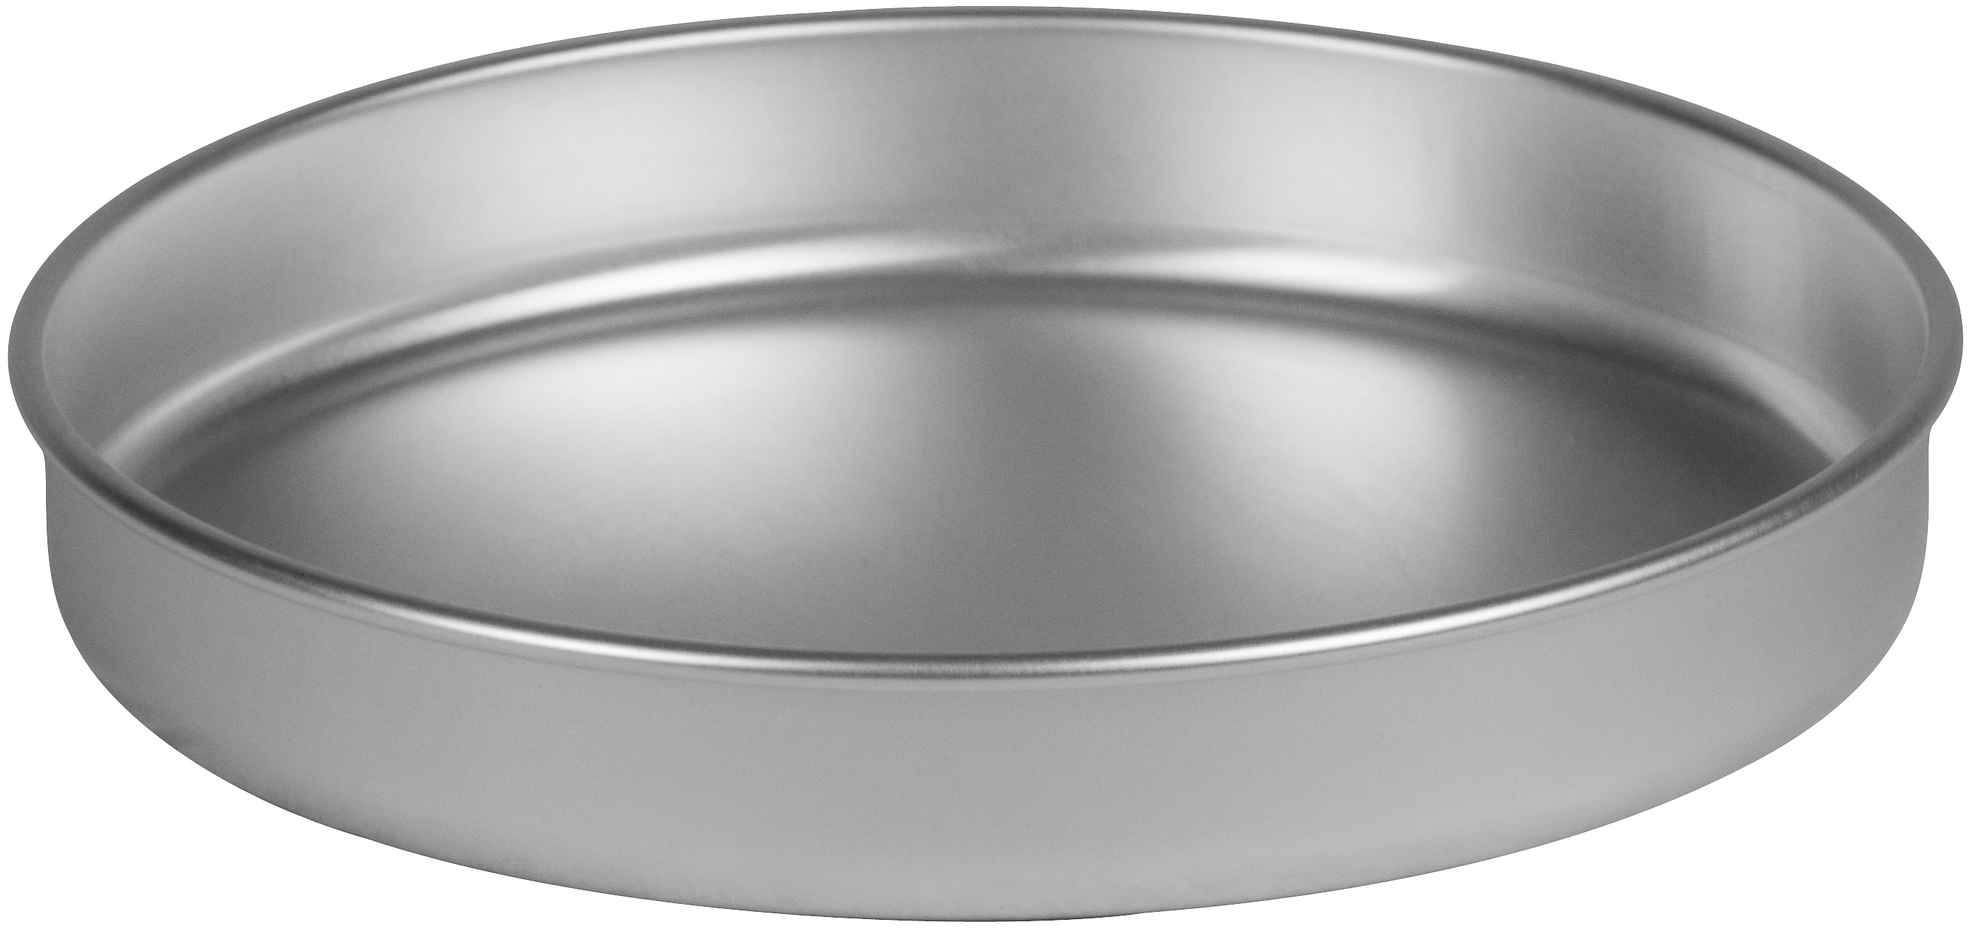 Frying pan / lid aluminum 25 series